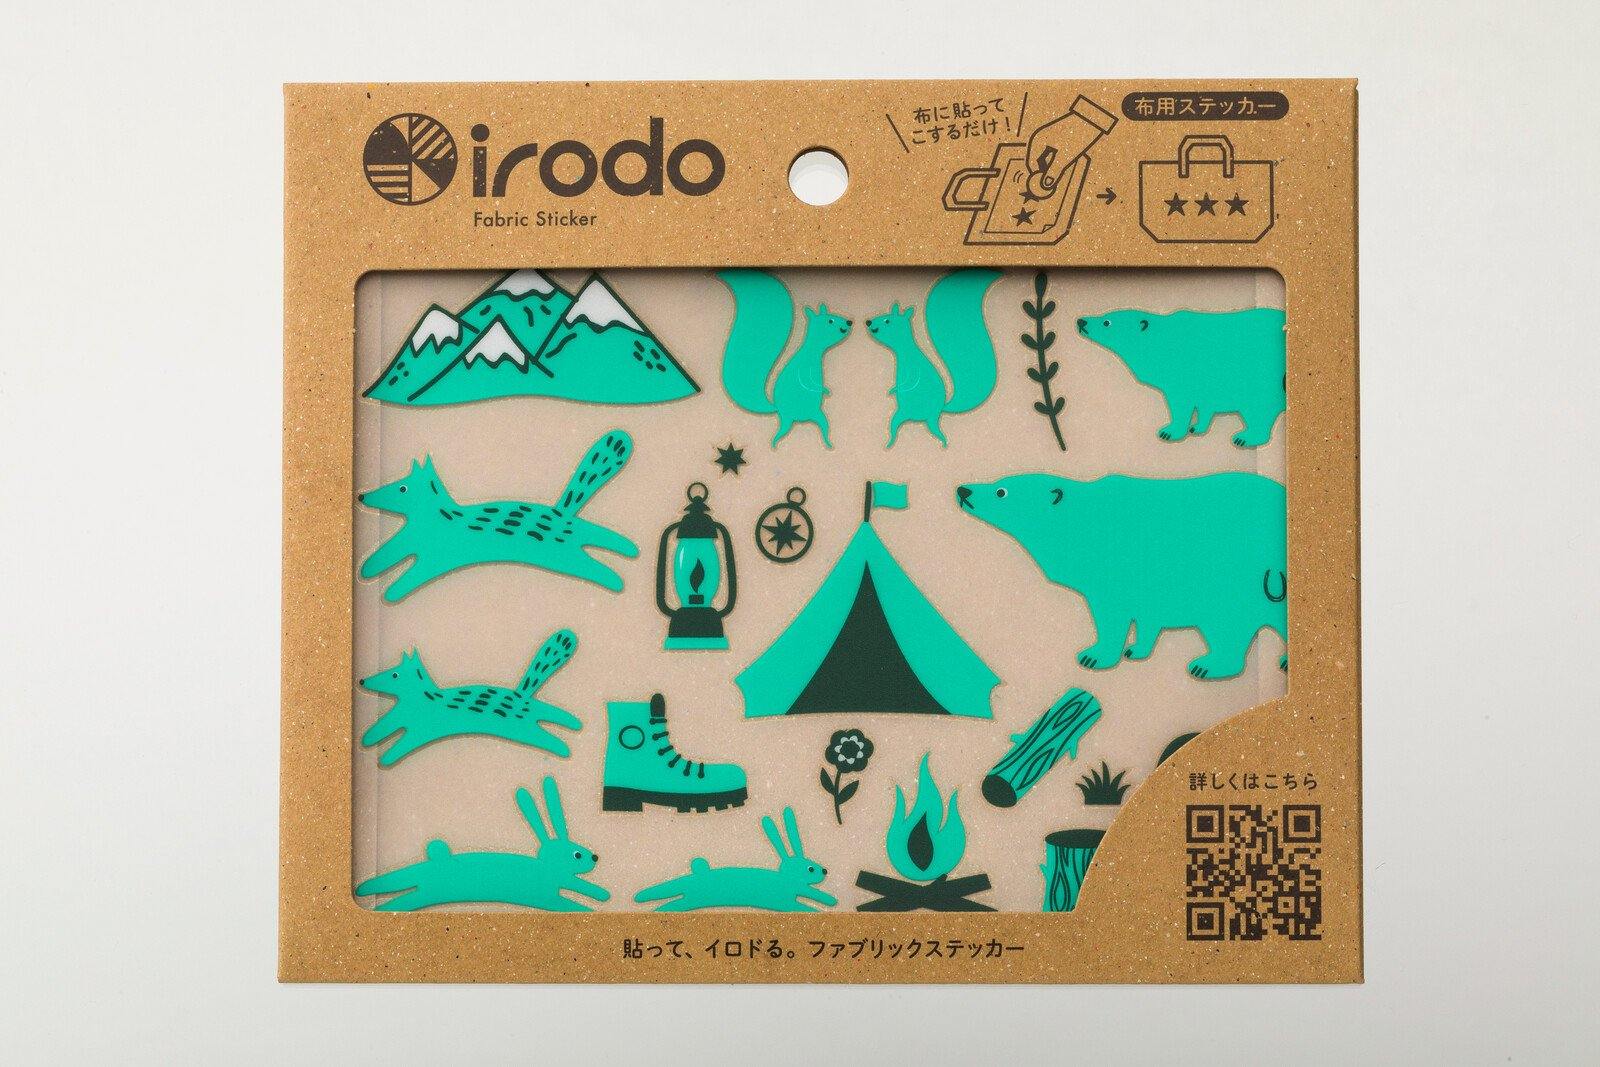 Irodo Fabric Decorating Transfer Sticker - Camp Green | papermindstationery.com